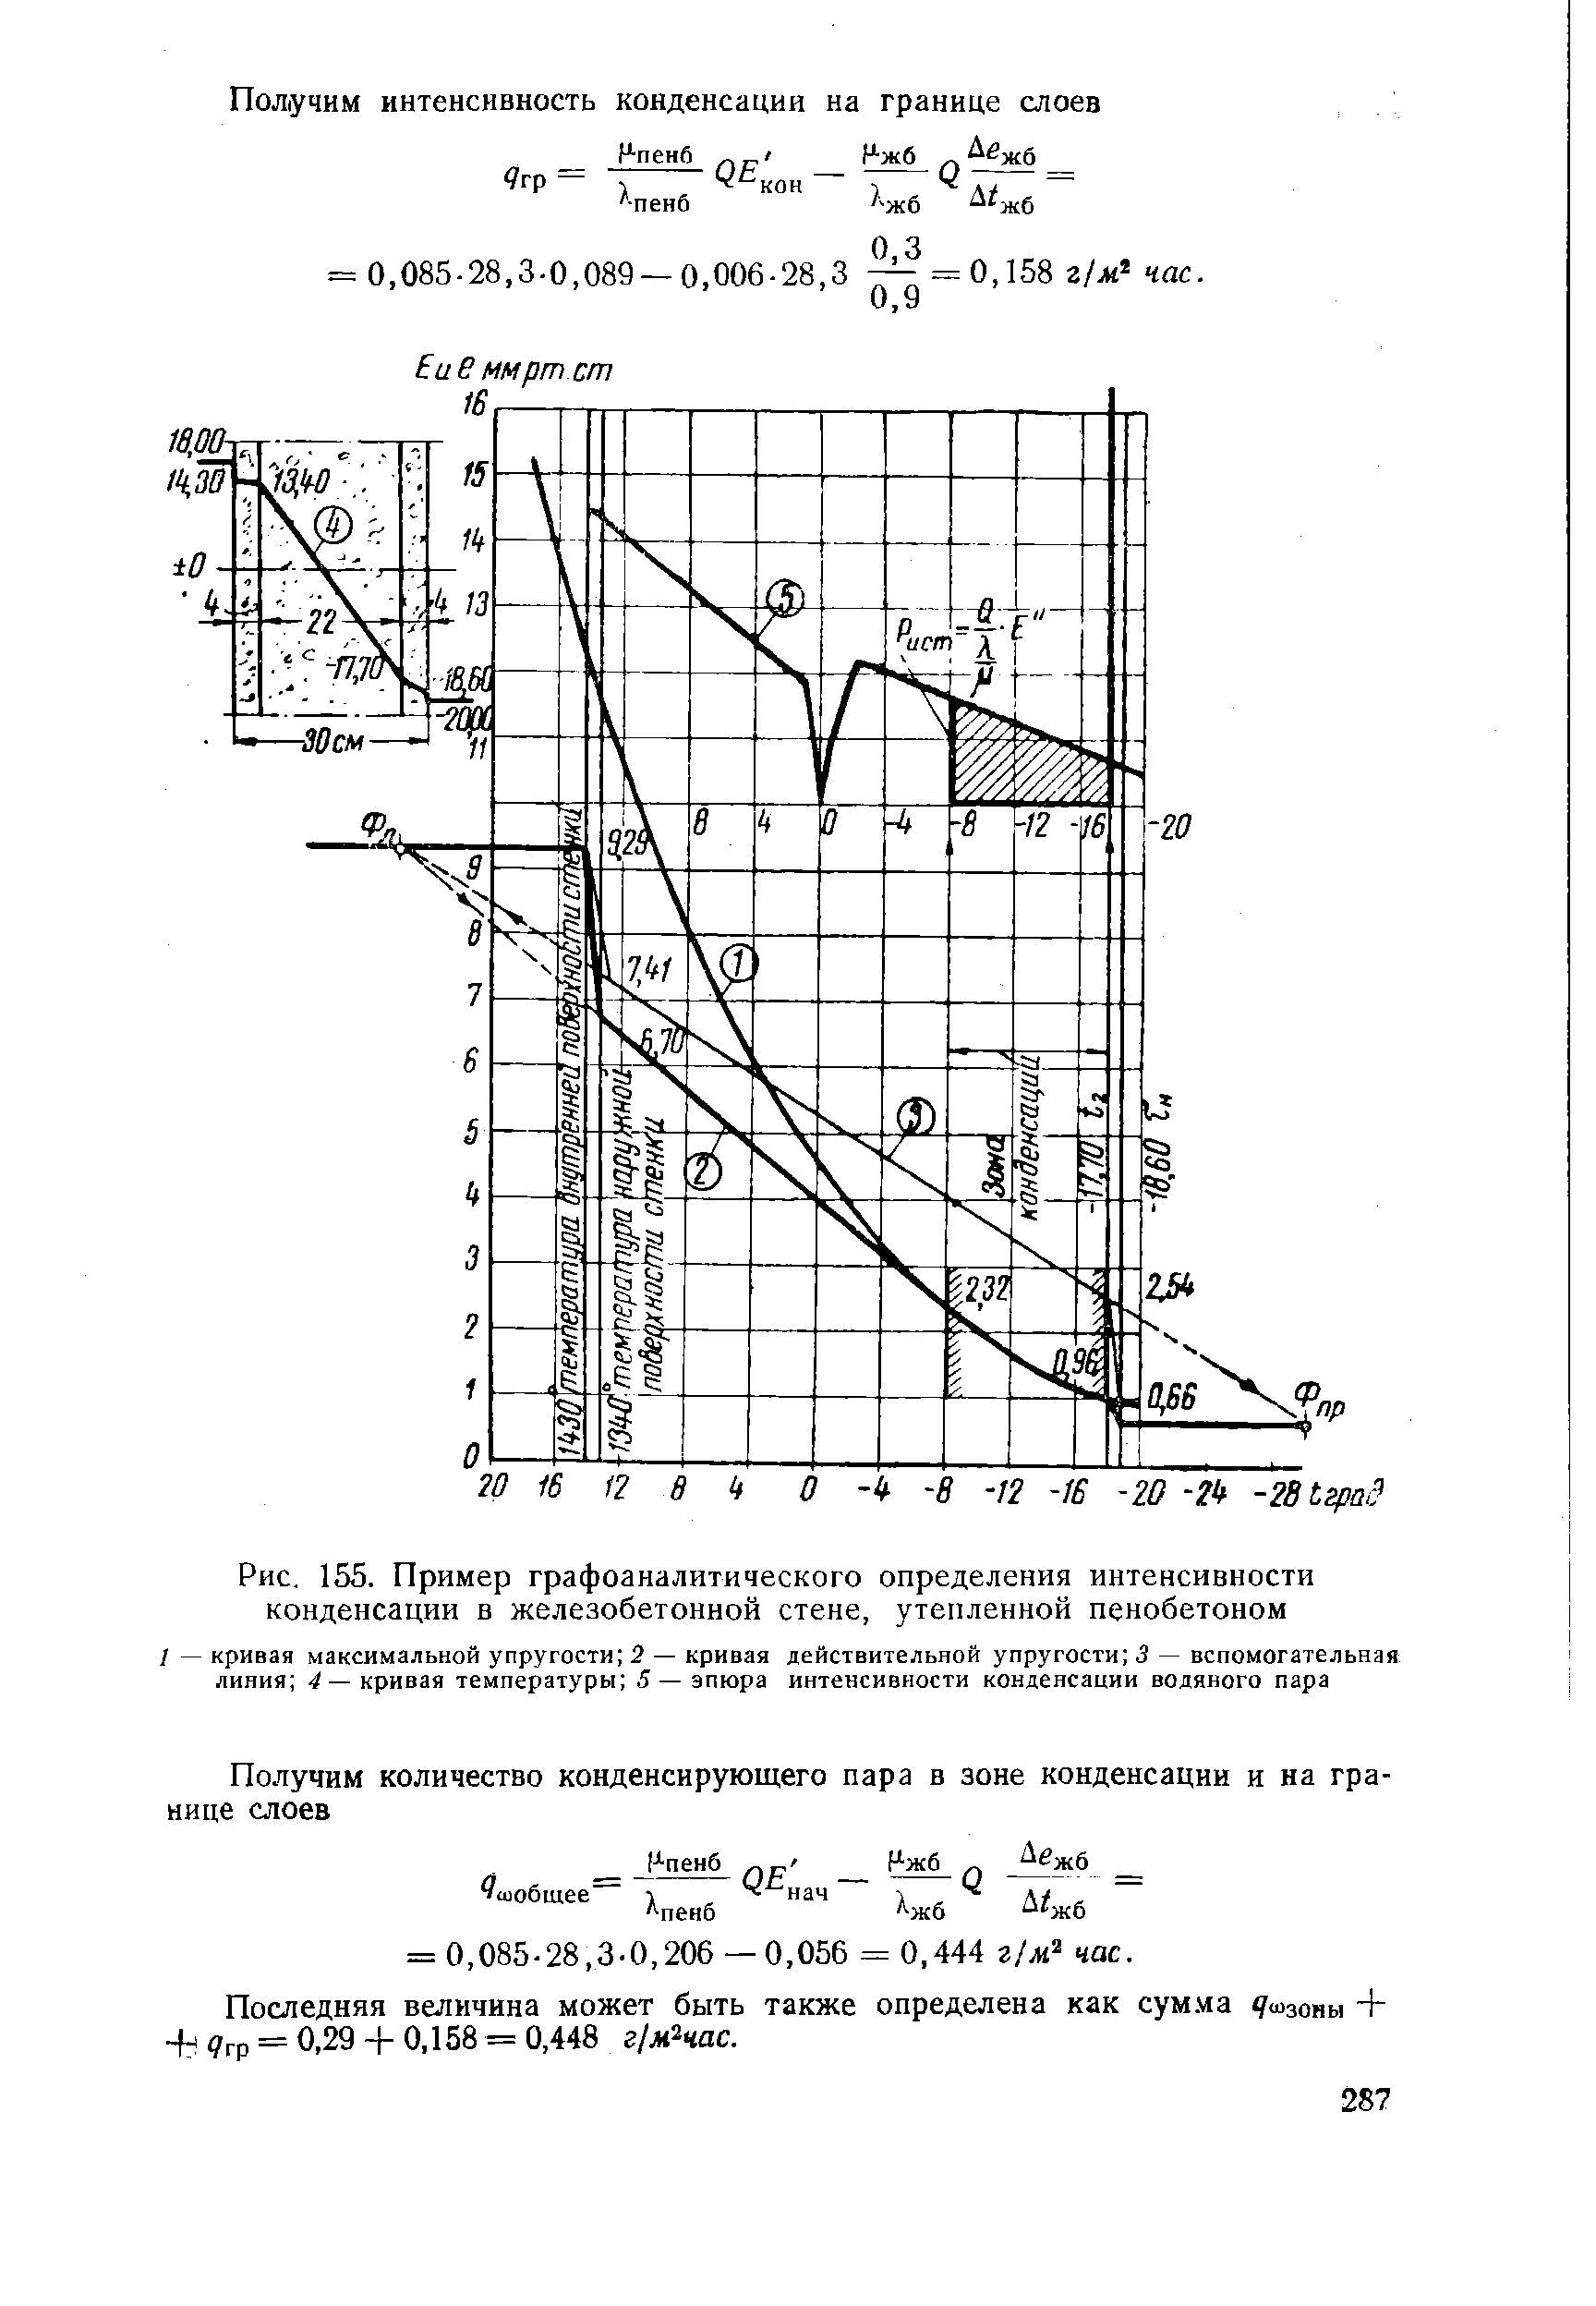 Рис. 155. Пример графоаналитического определения интенсивности конденсации в железобетонной стене, утепленной пенобетоном
